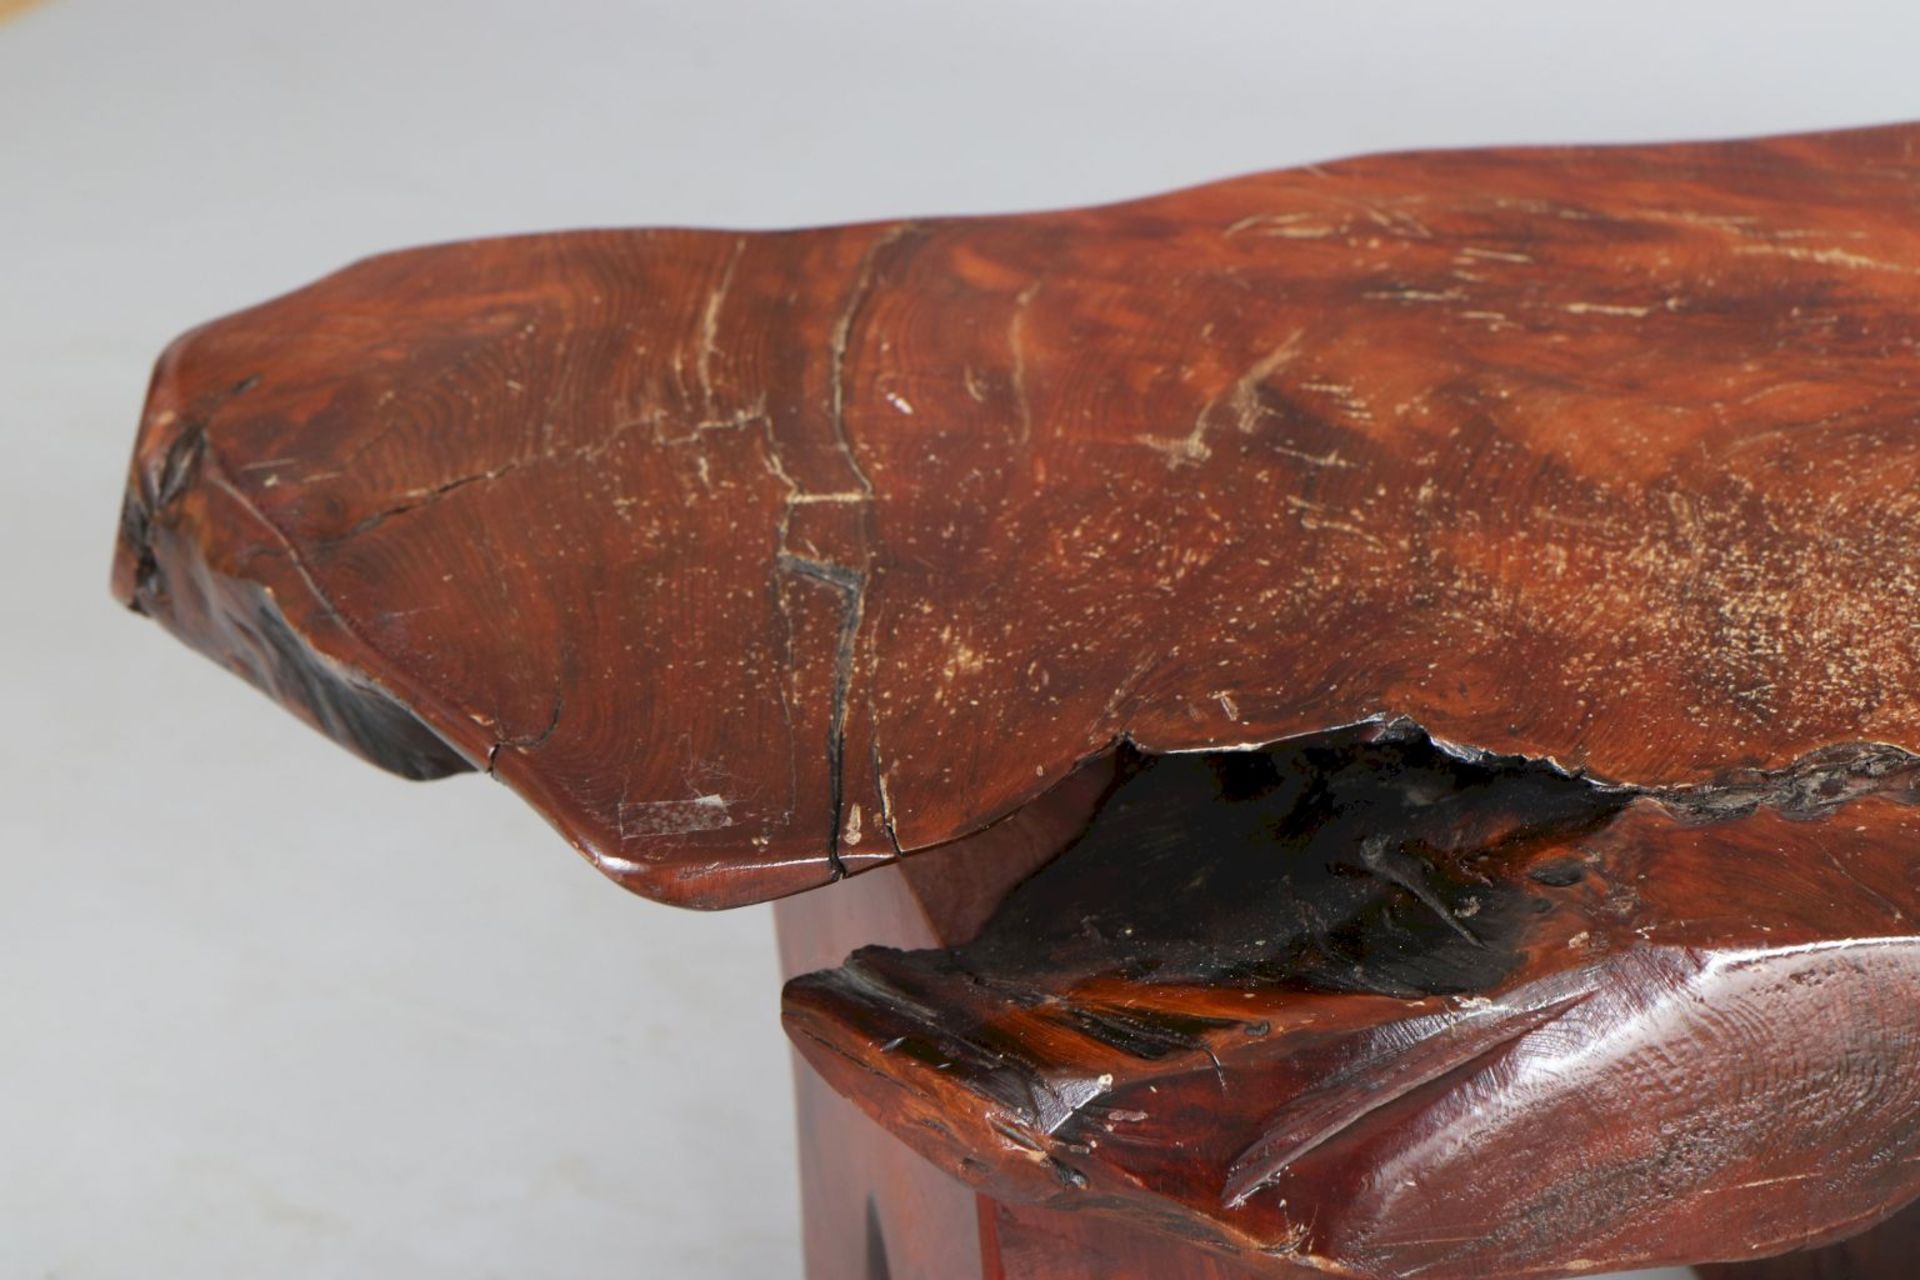 Couchtisch in Form eines Baum-QuerschnittsHartholz, passige, unbehandelte Platte auf 2 Stützen - Image 3 of 4